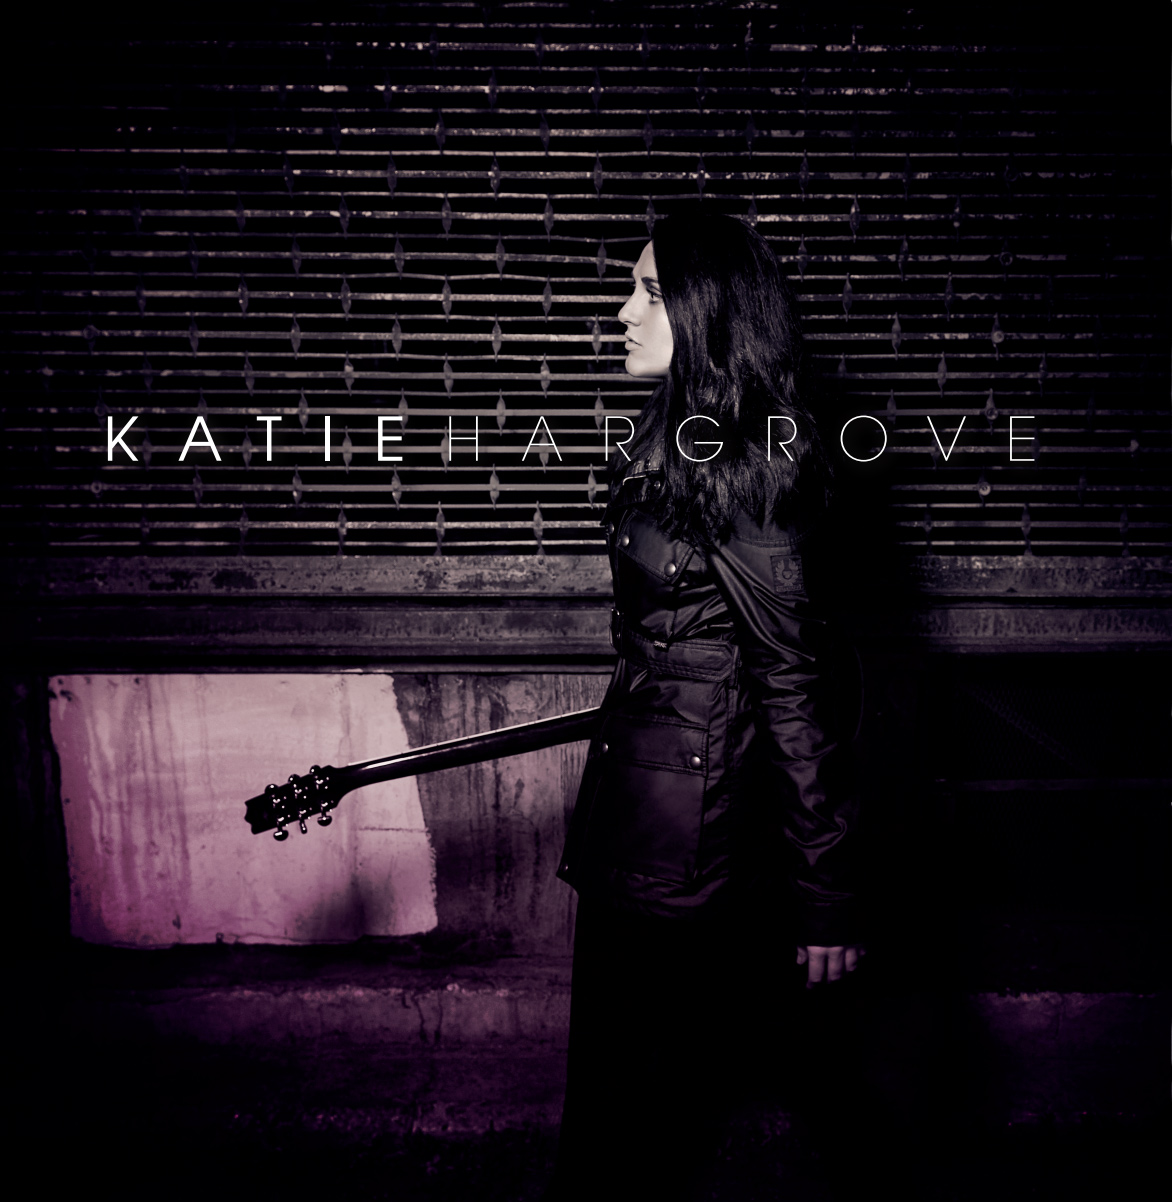 Katie-Hargrove-album-cover-1